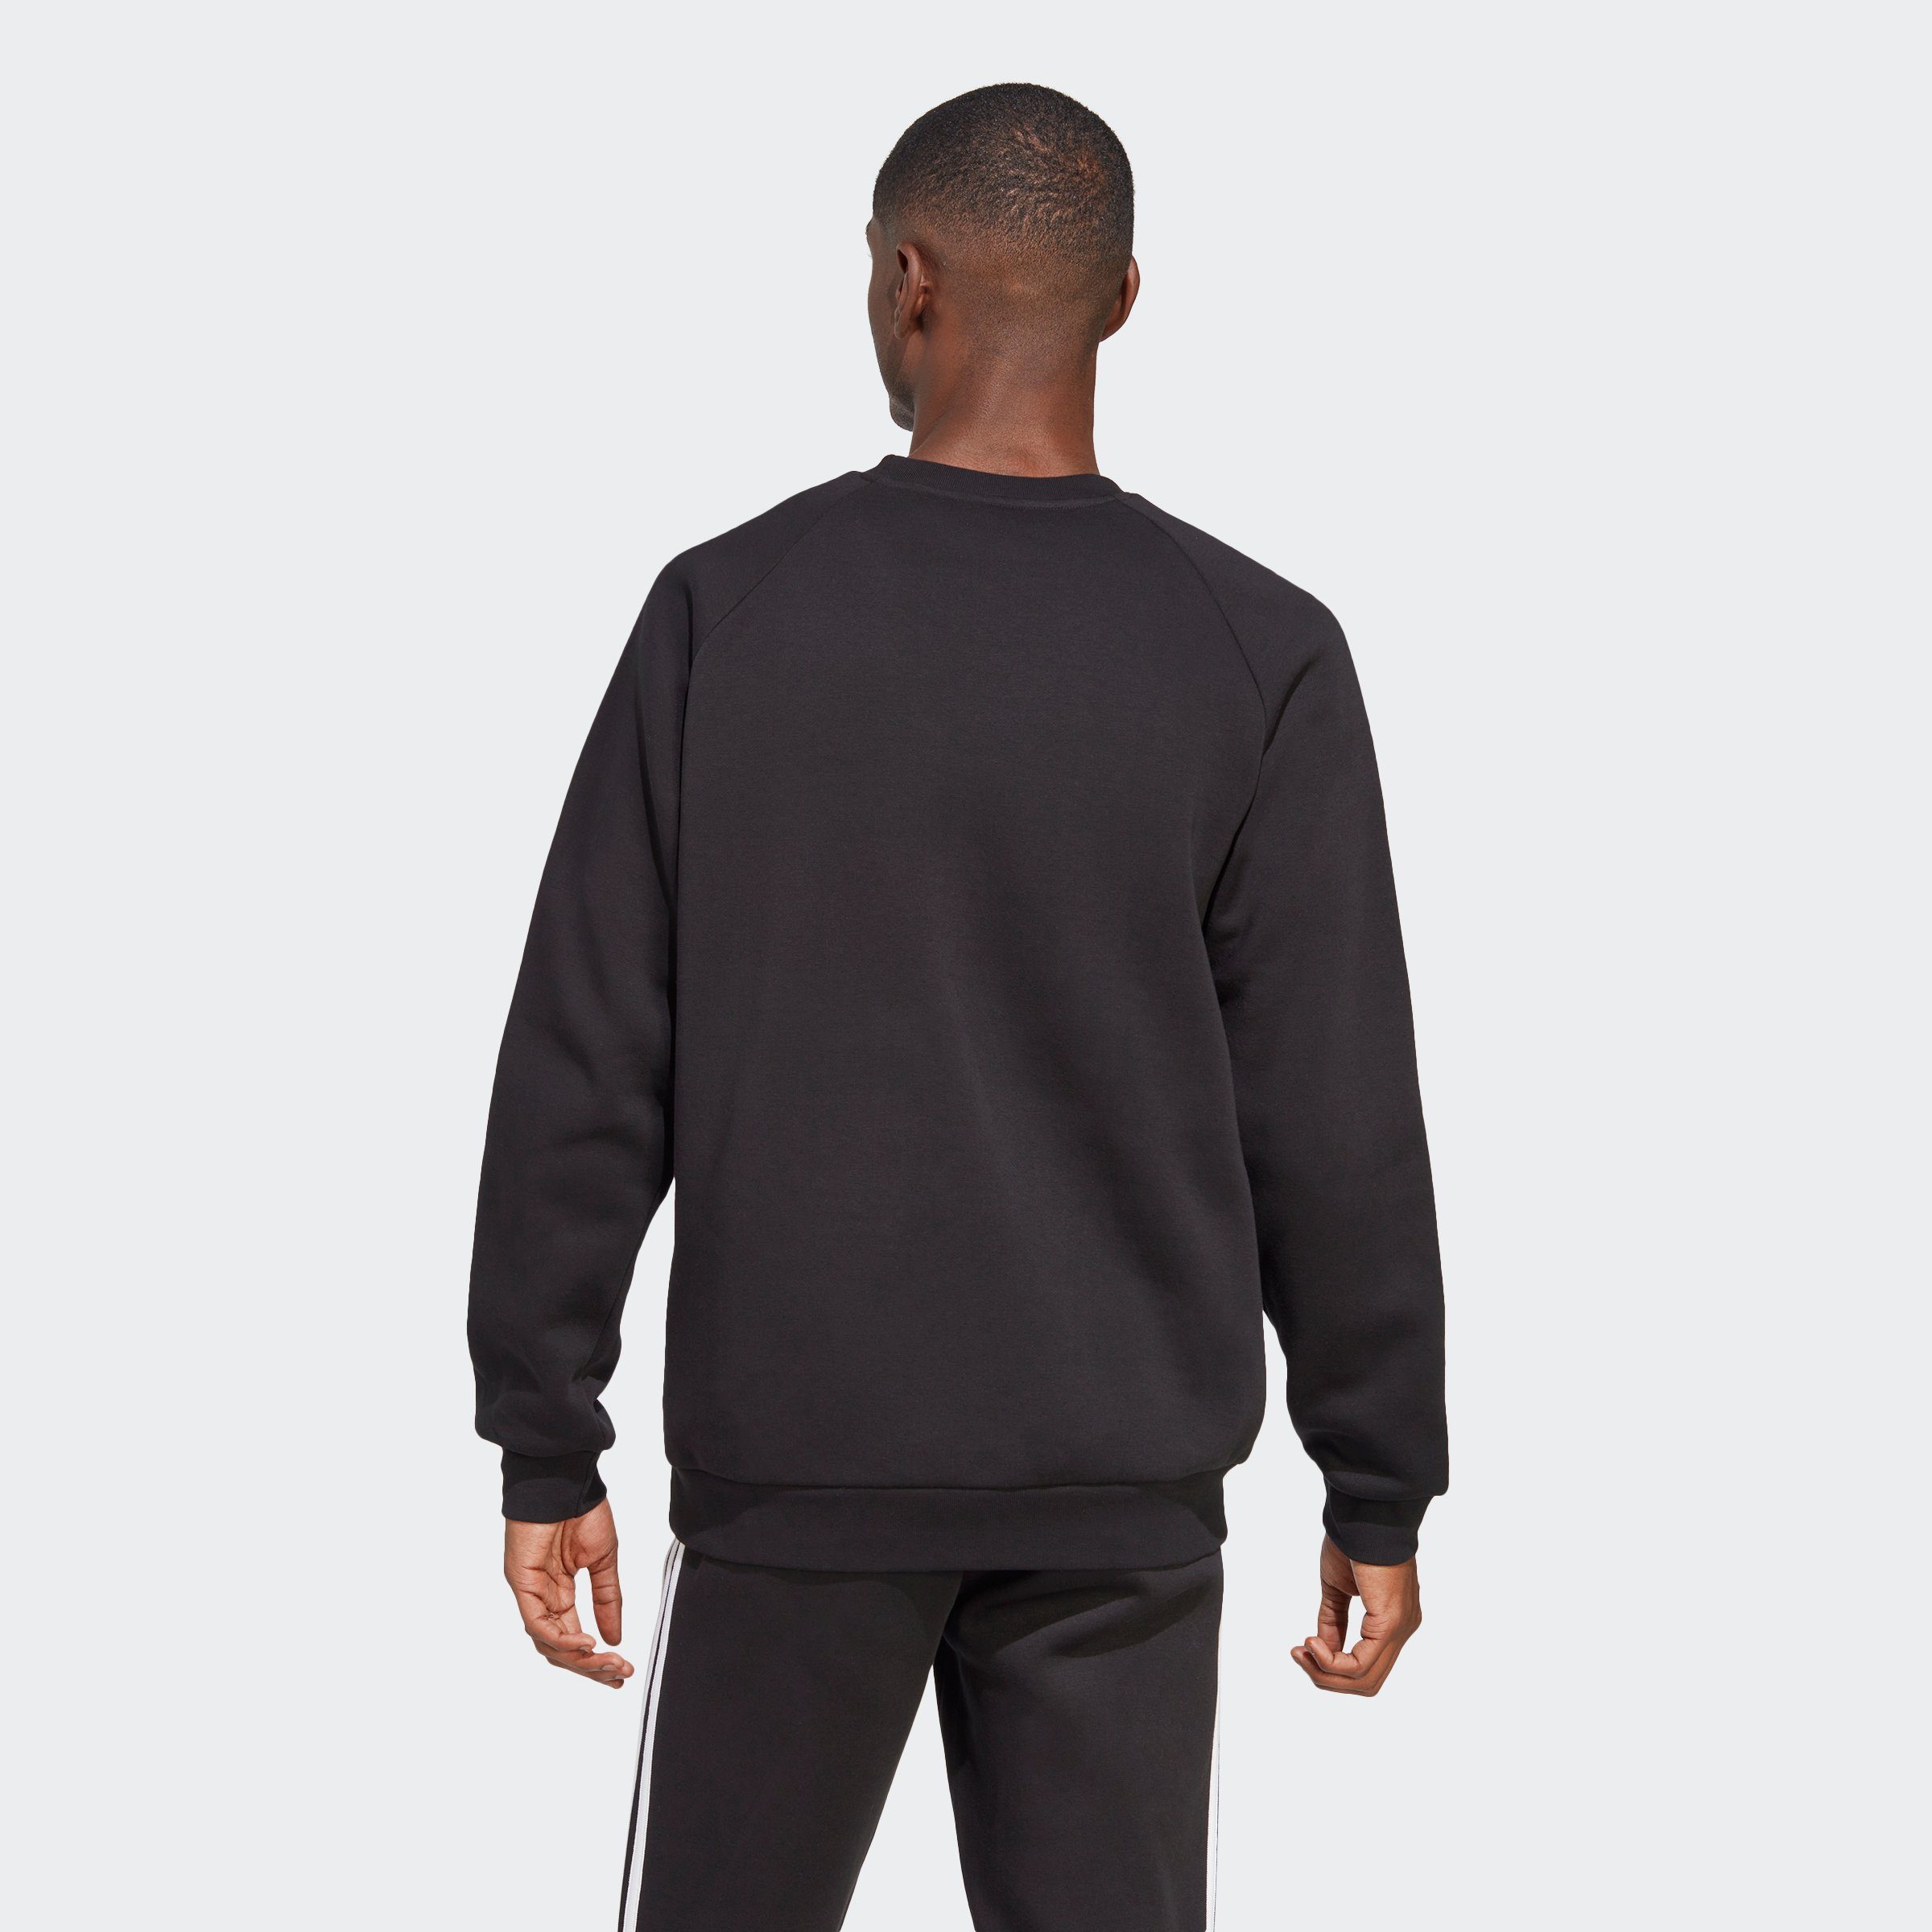 ADICOLOR 3-STREIFEN Sweatshirt adidas Black CLASSICS Originals